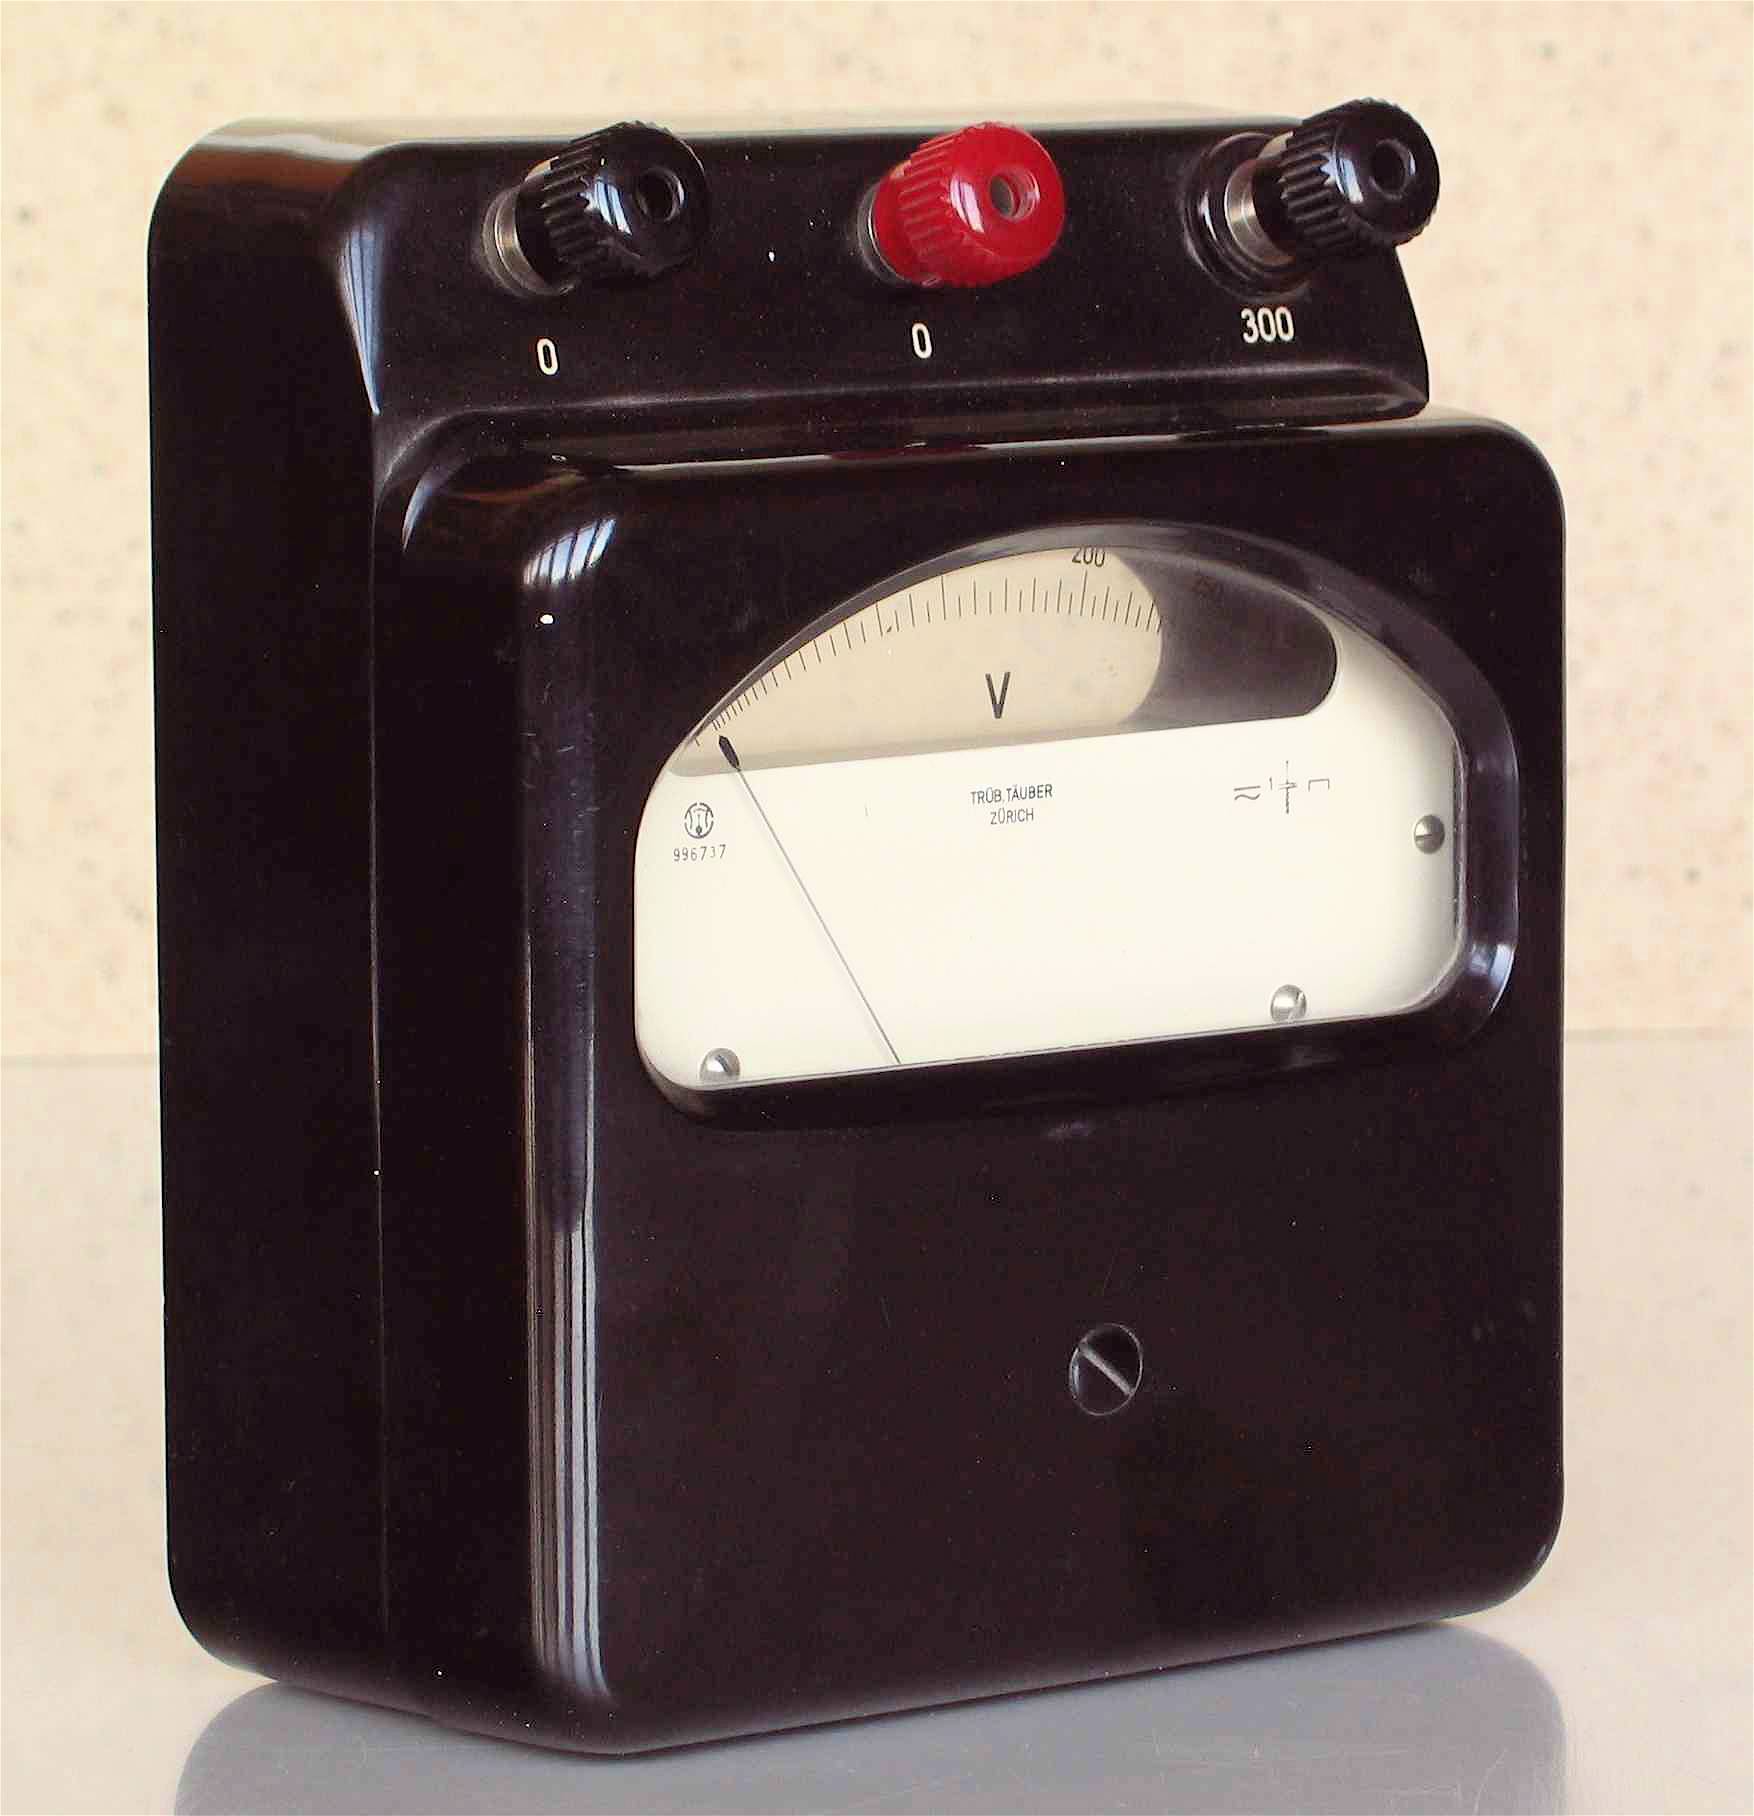 Voltmètre électrostatique
(50 V à 300 V)